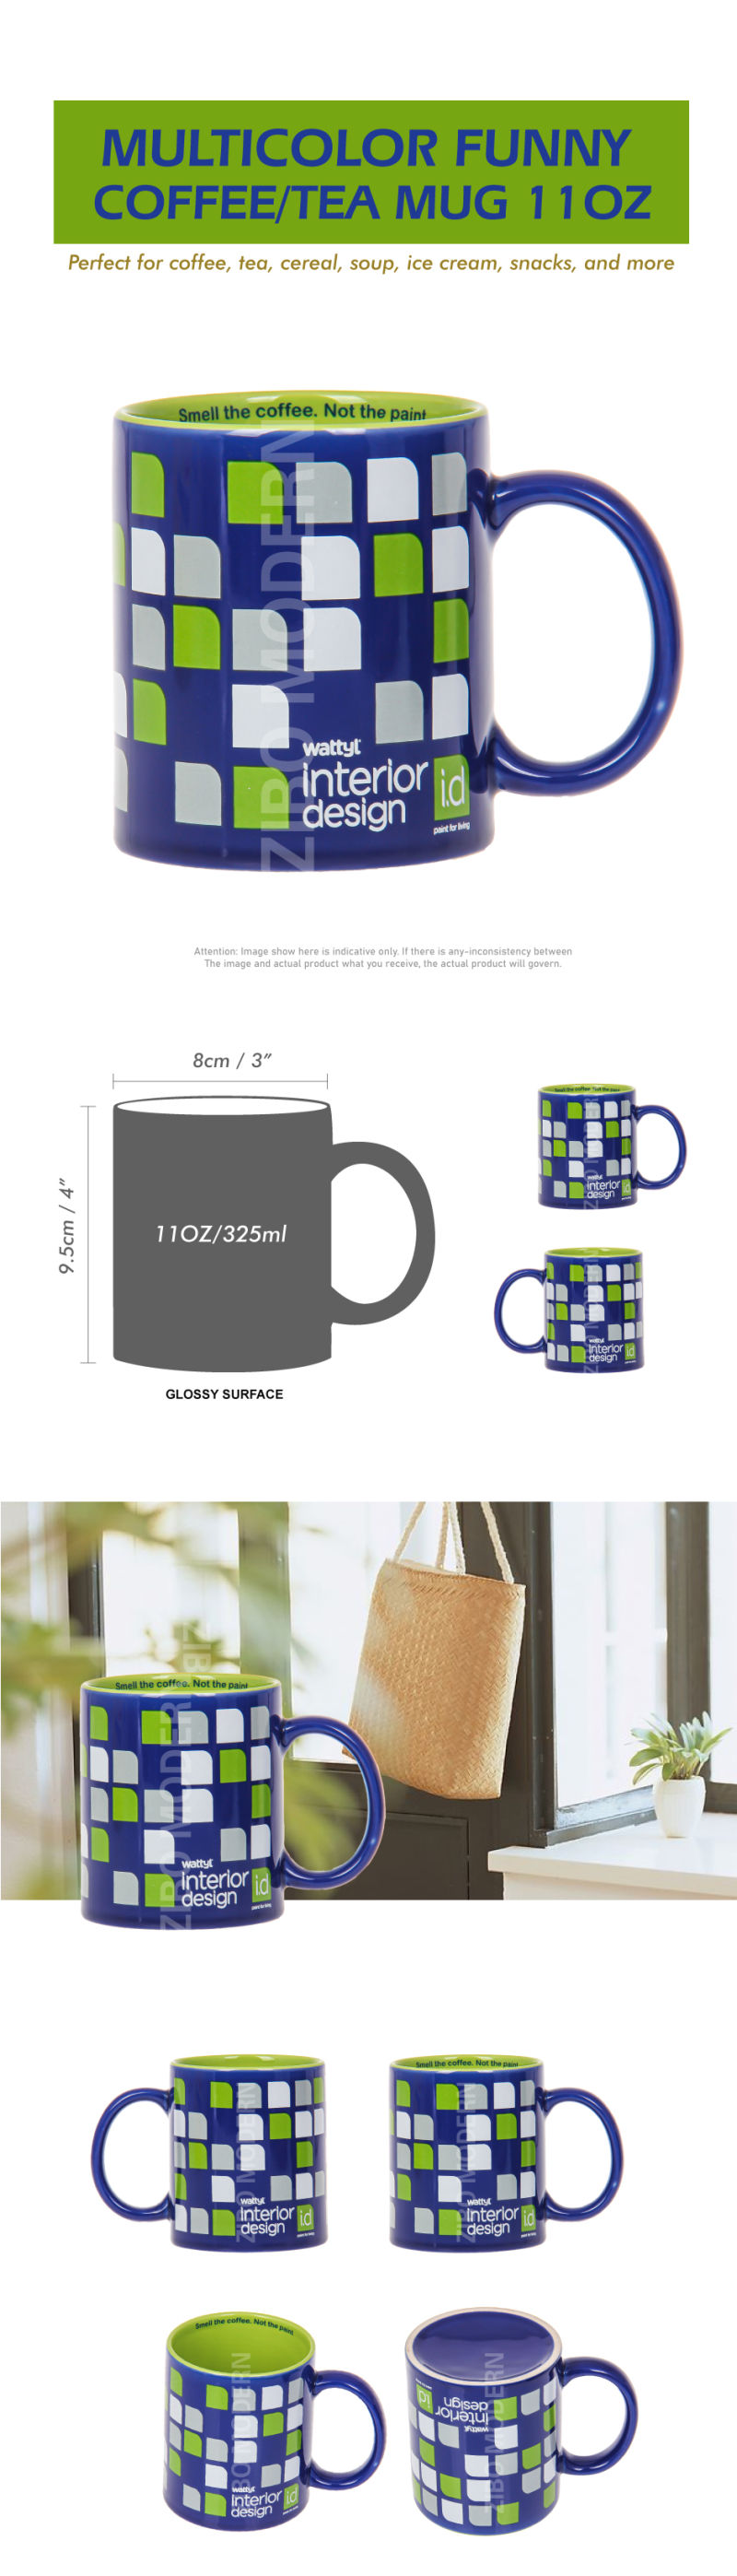 11 Oz Multicolor Funny Ceramic Coffee / Tea Mug - Ceramic Mug - Porcelain Mugs